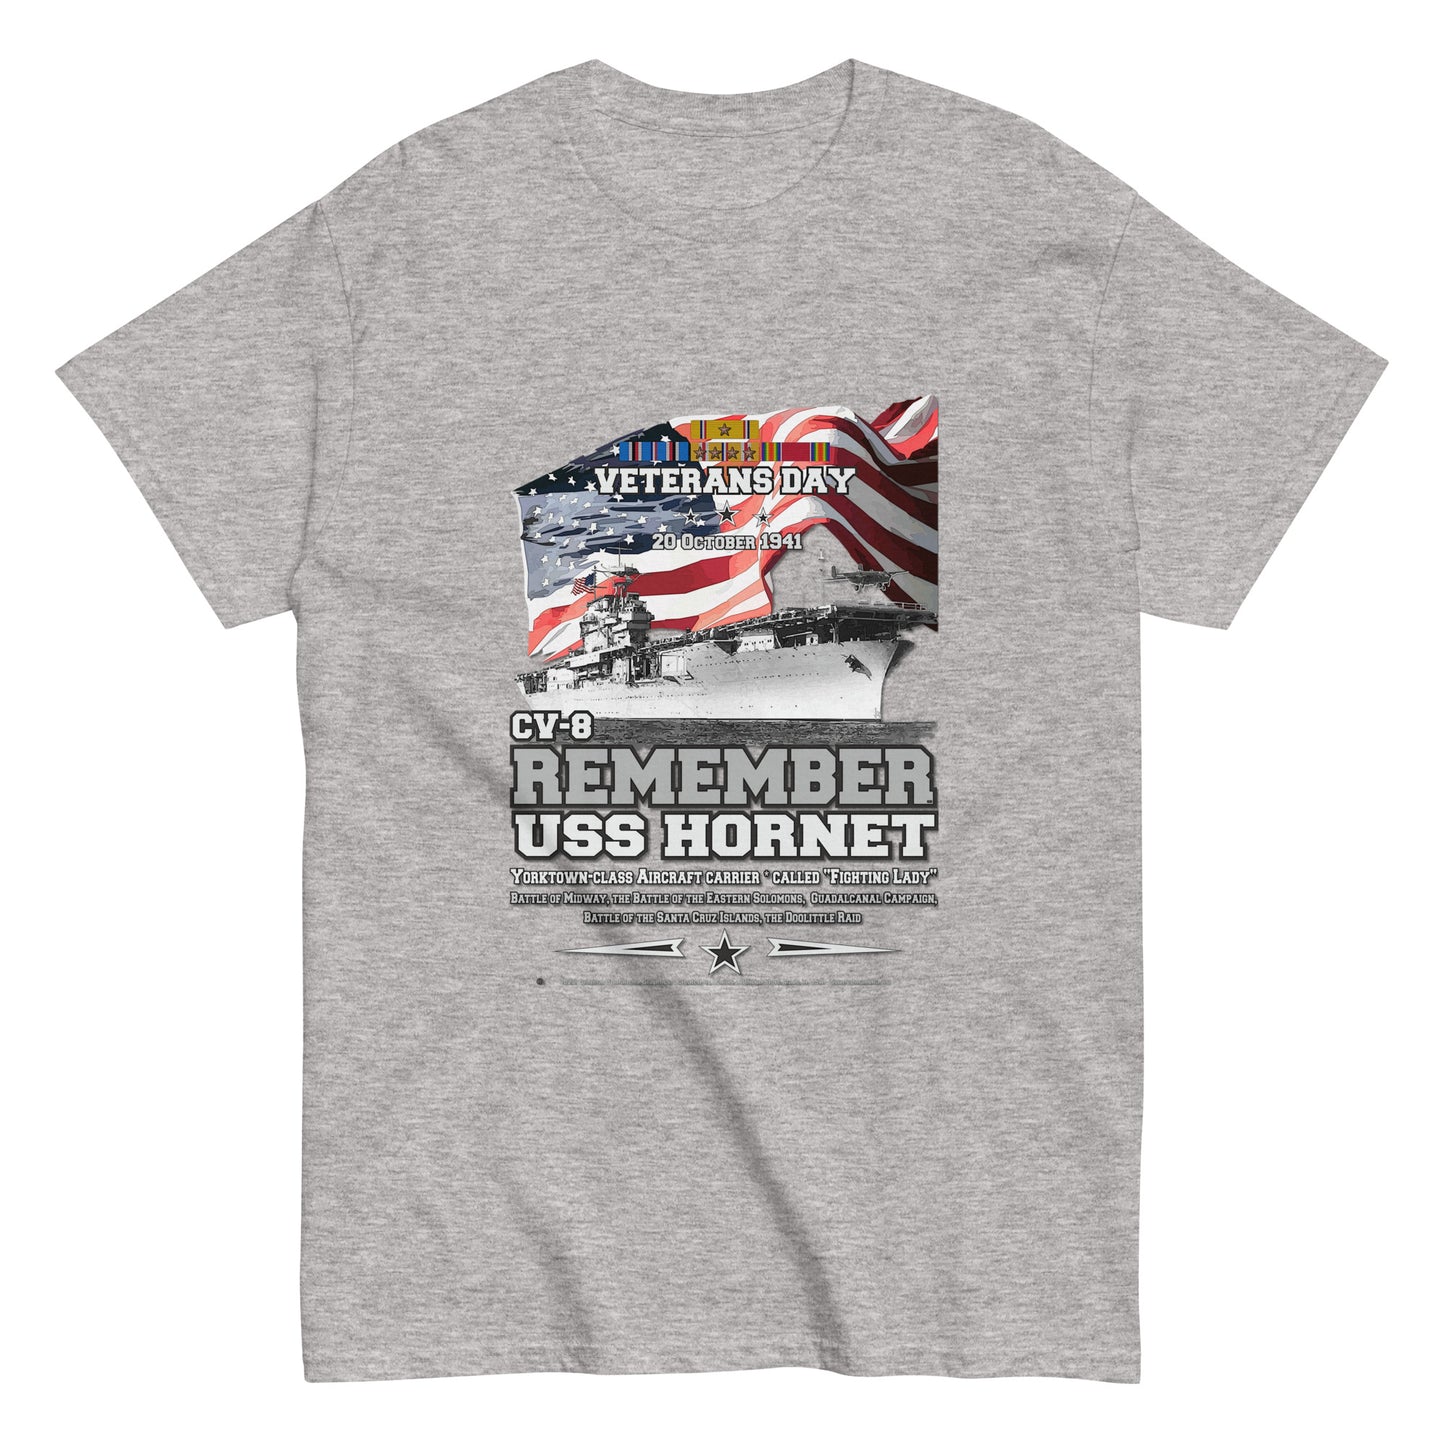 USS HORNET CV-8 Tee, US navy T-shirt,USS HORNET Tee, US NAVY Veterans T-Shirt, Aircraft Carrier Veterans Classic T-Shirt, Comancha.us T-Shirt Store, USS HORNET CV-8 t-shirt, Aircraft Carrier Veterans Classic T-Shirt, Comancha.us T-Shirt, 